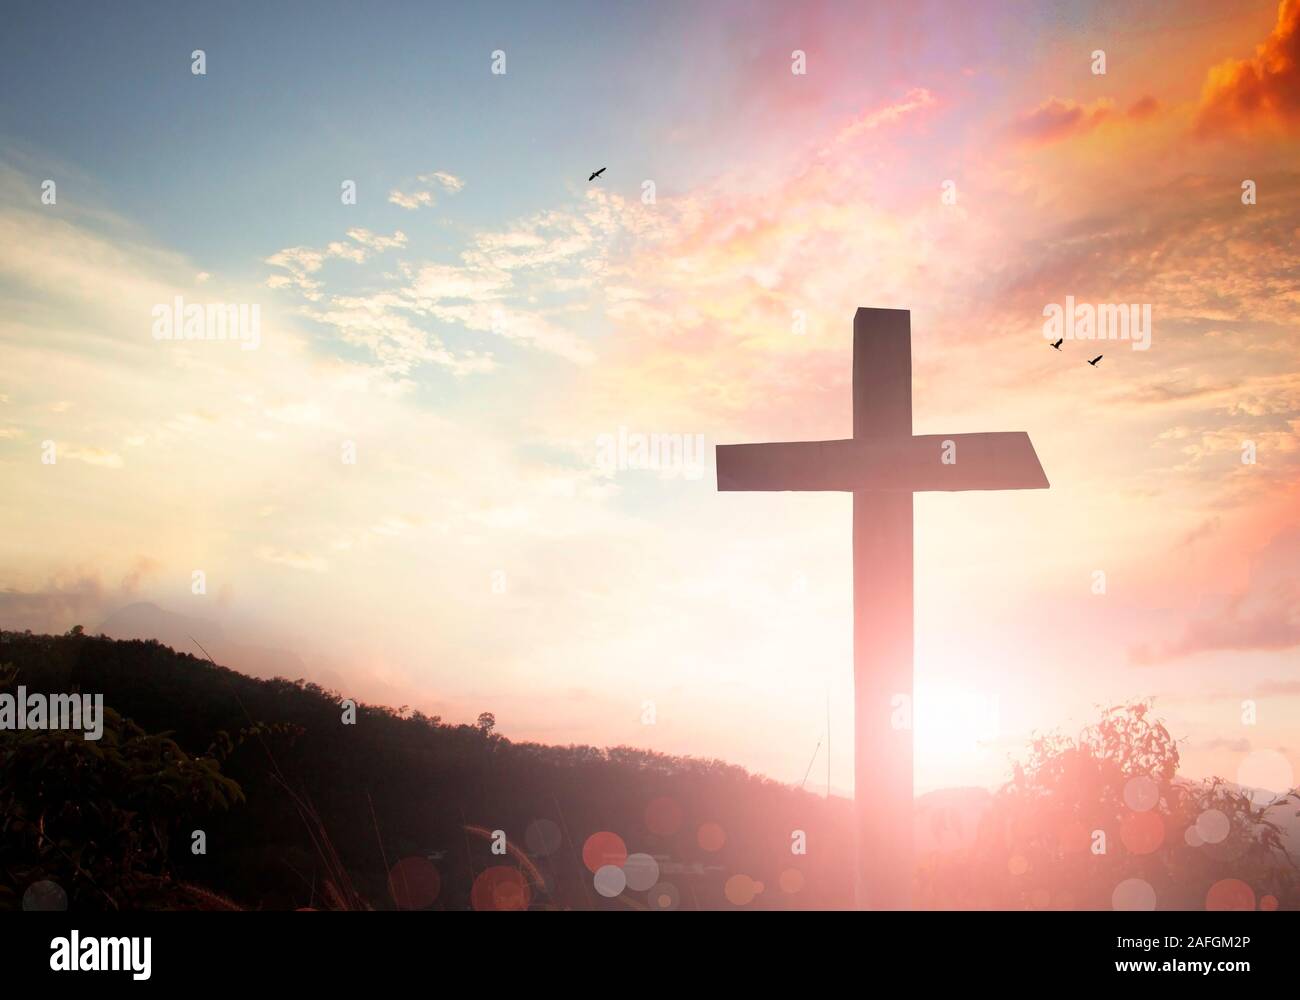 Dimanche de Pâques : concept illustration de Jésus Christ crucifixion le Vendredi saint Banque D'Images